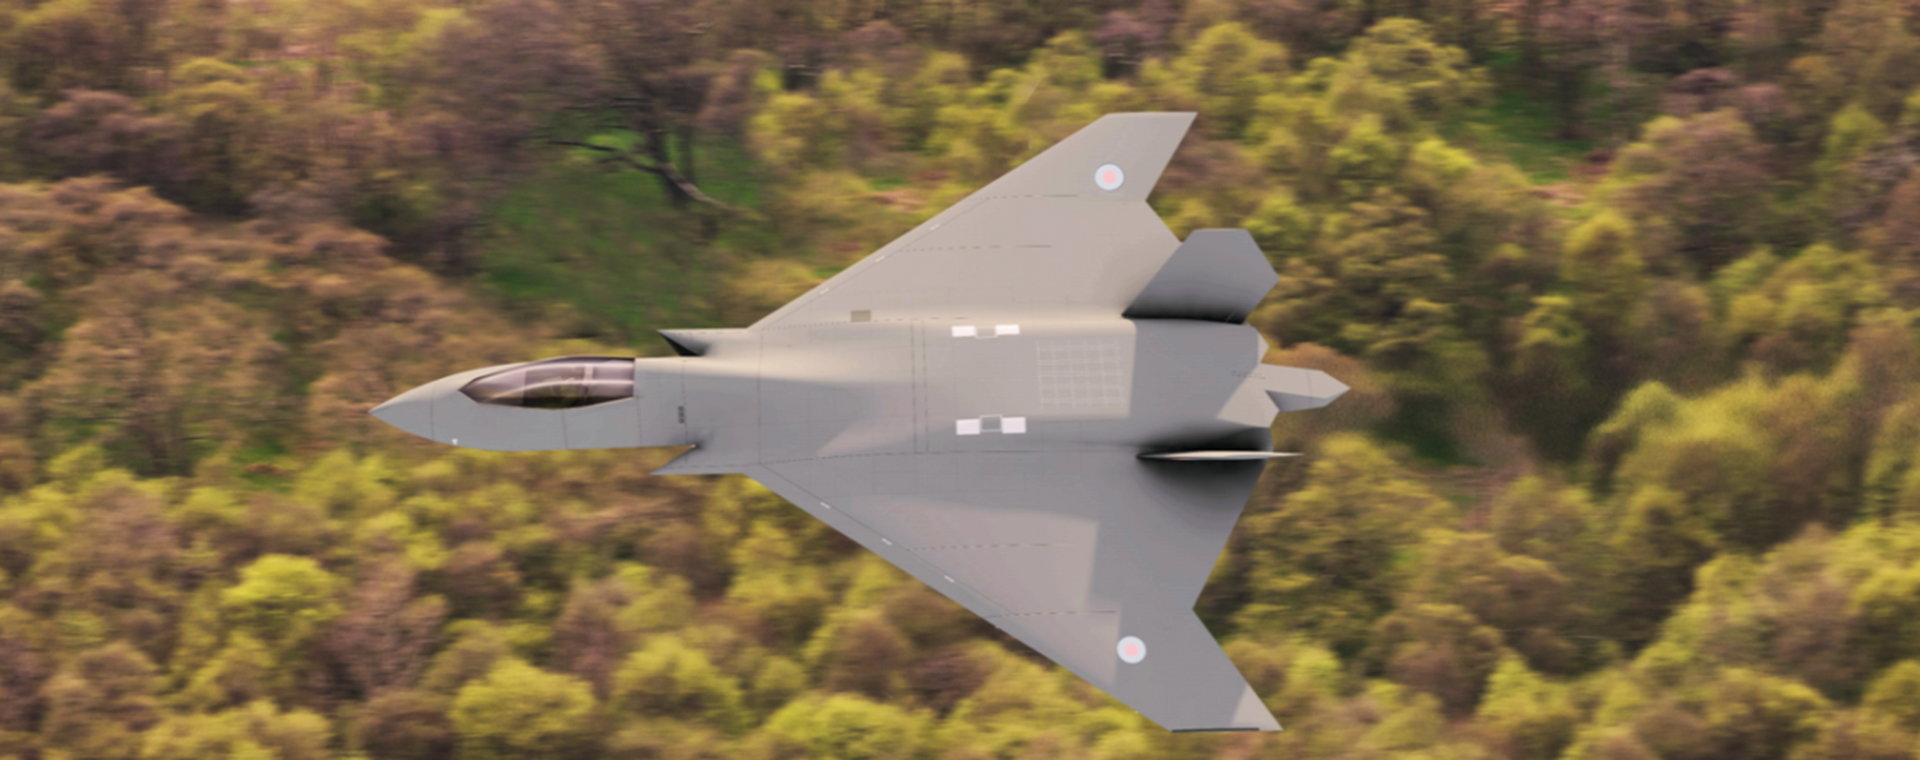 Wizualizacja przyszłego brytyjskiego myśliwca szóstej generacji Tempest, pokazana w grudniu 2020 r. 